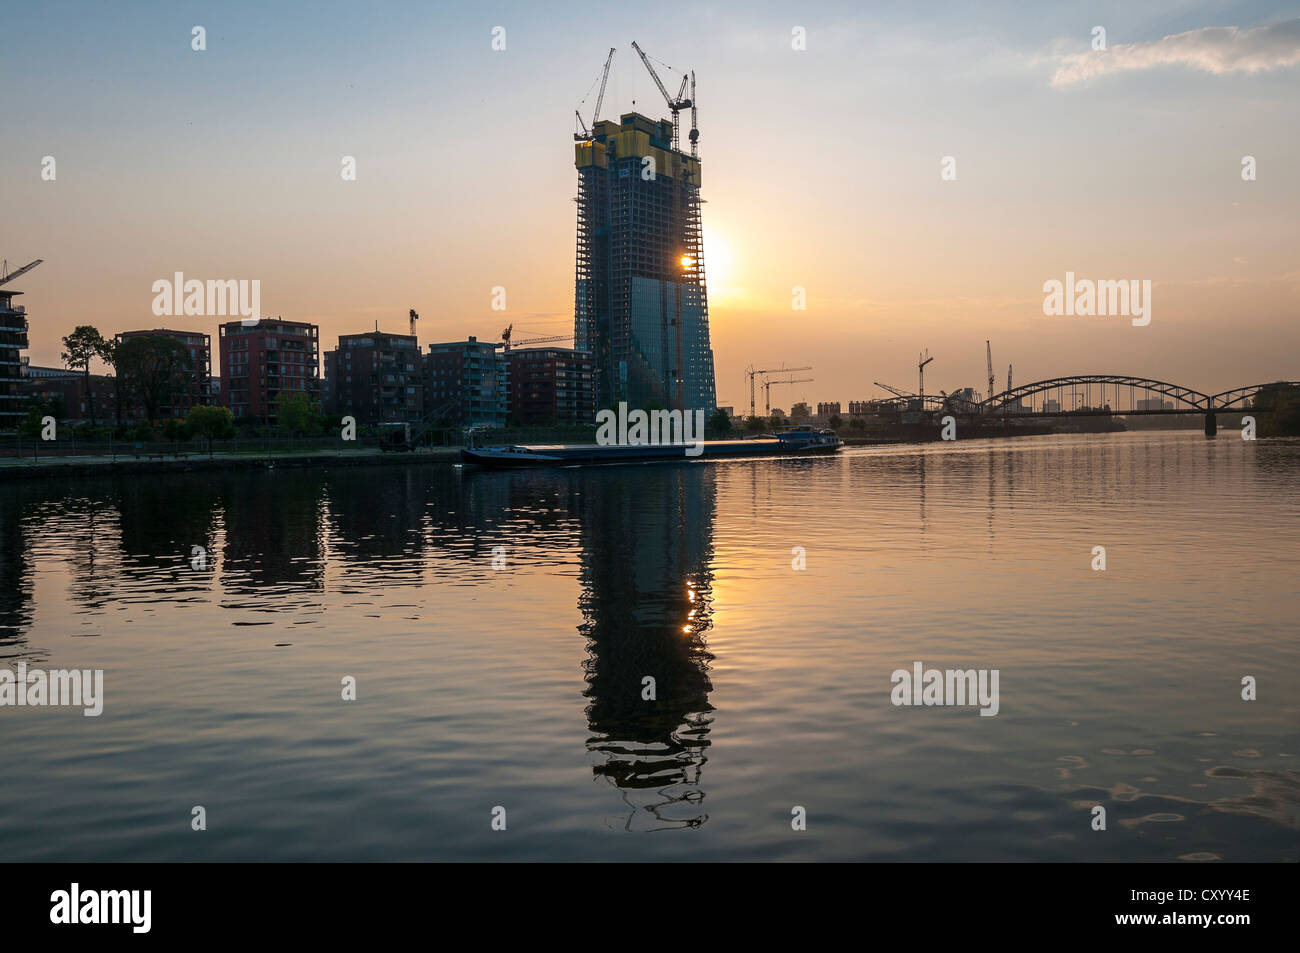 Bâtiment récent de la Banque centrale européenne, BCE, à Frankfurt am Main, au lever du soleil, terres d'un ancien commerce de gros Banque D'Images